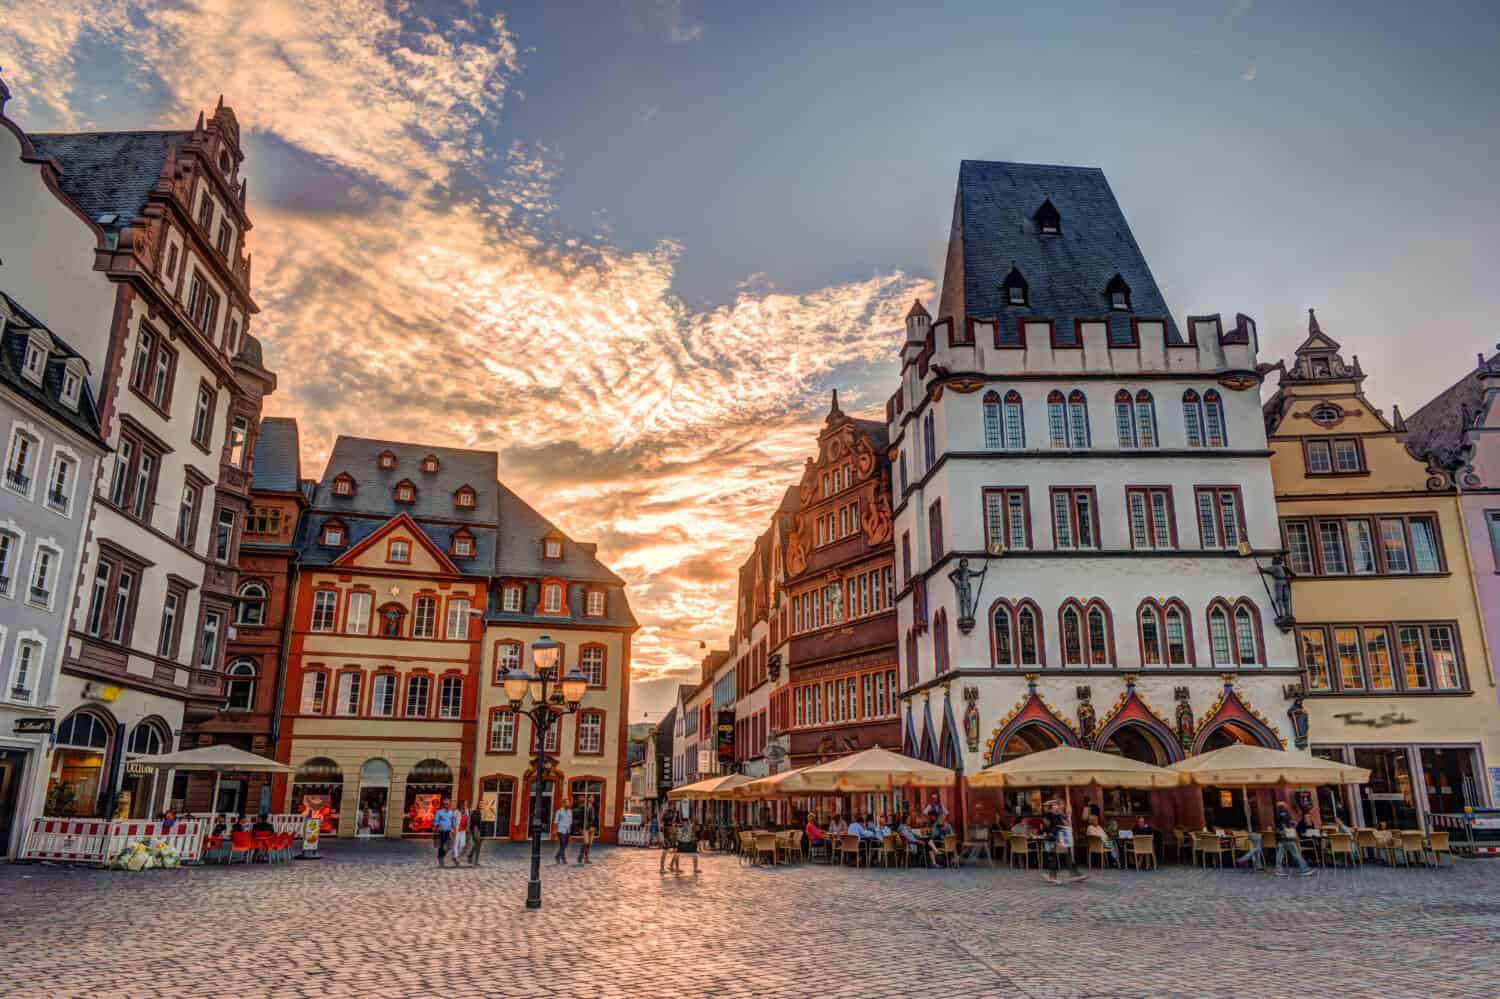 Facciate di case storiche Mercato principale Treviri Renania Palatinato Germania.